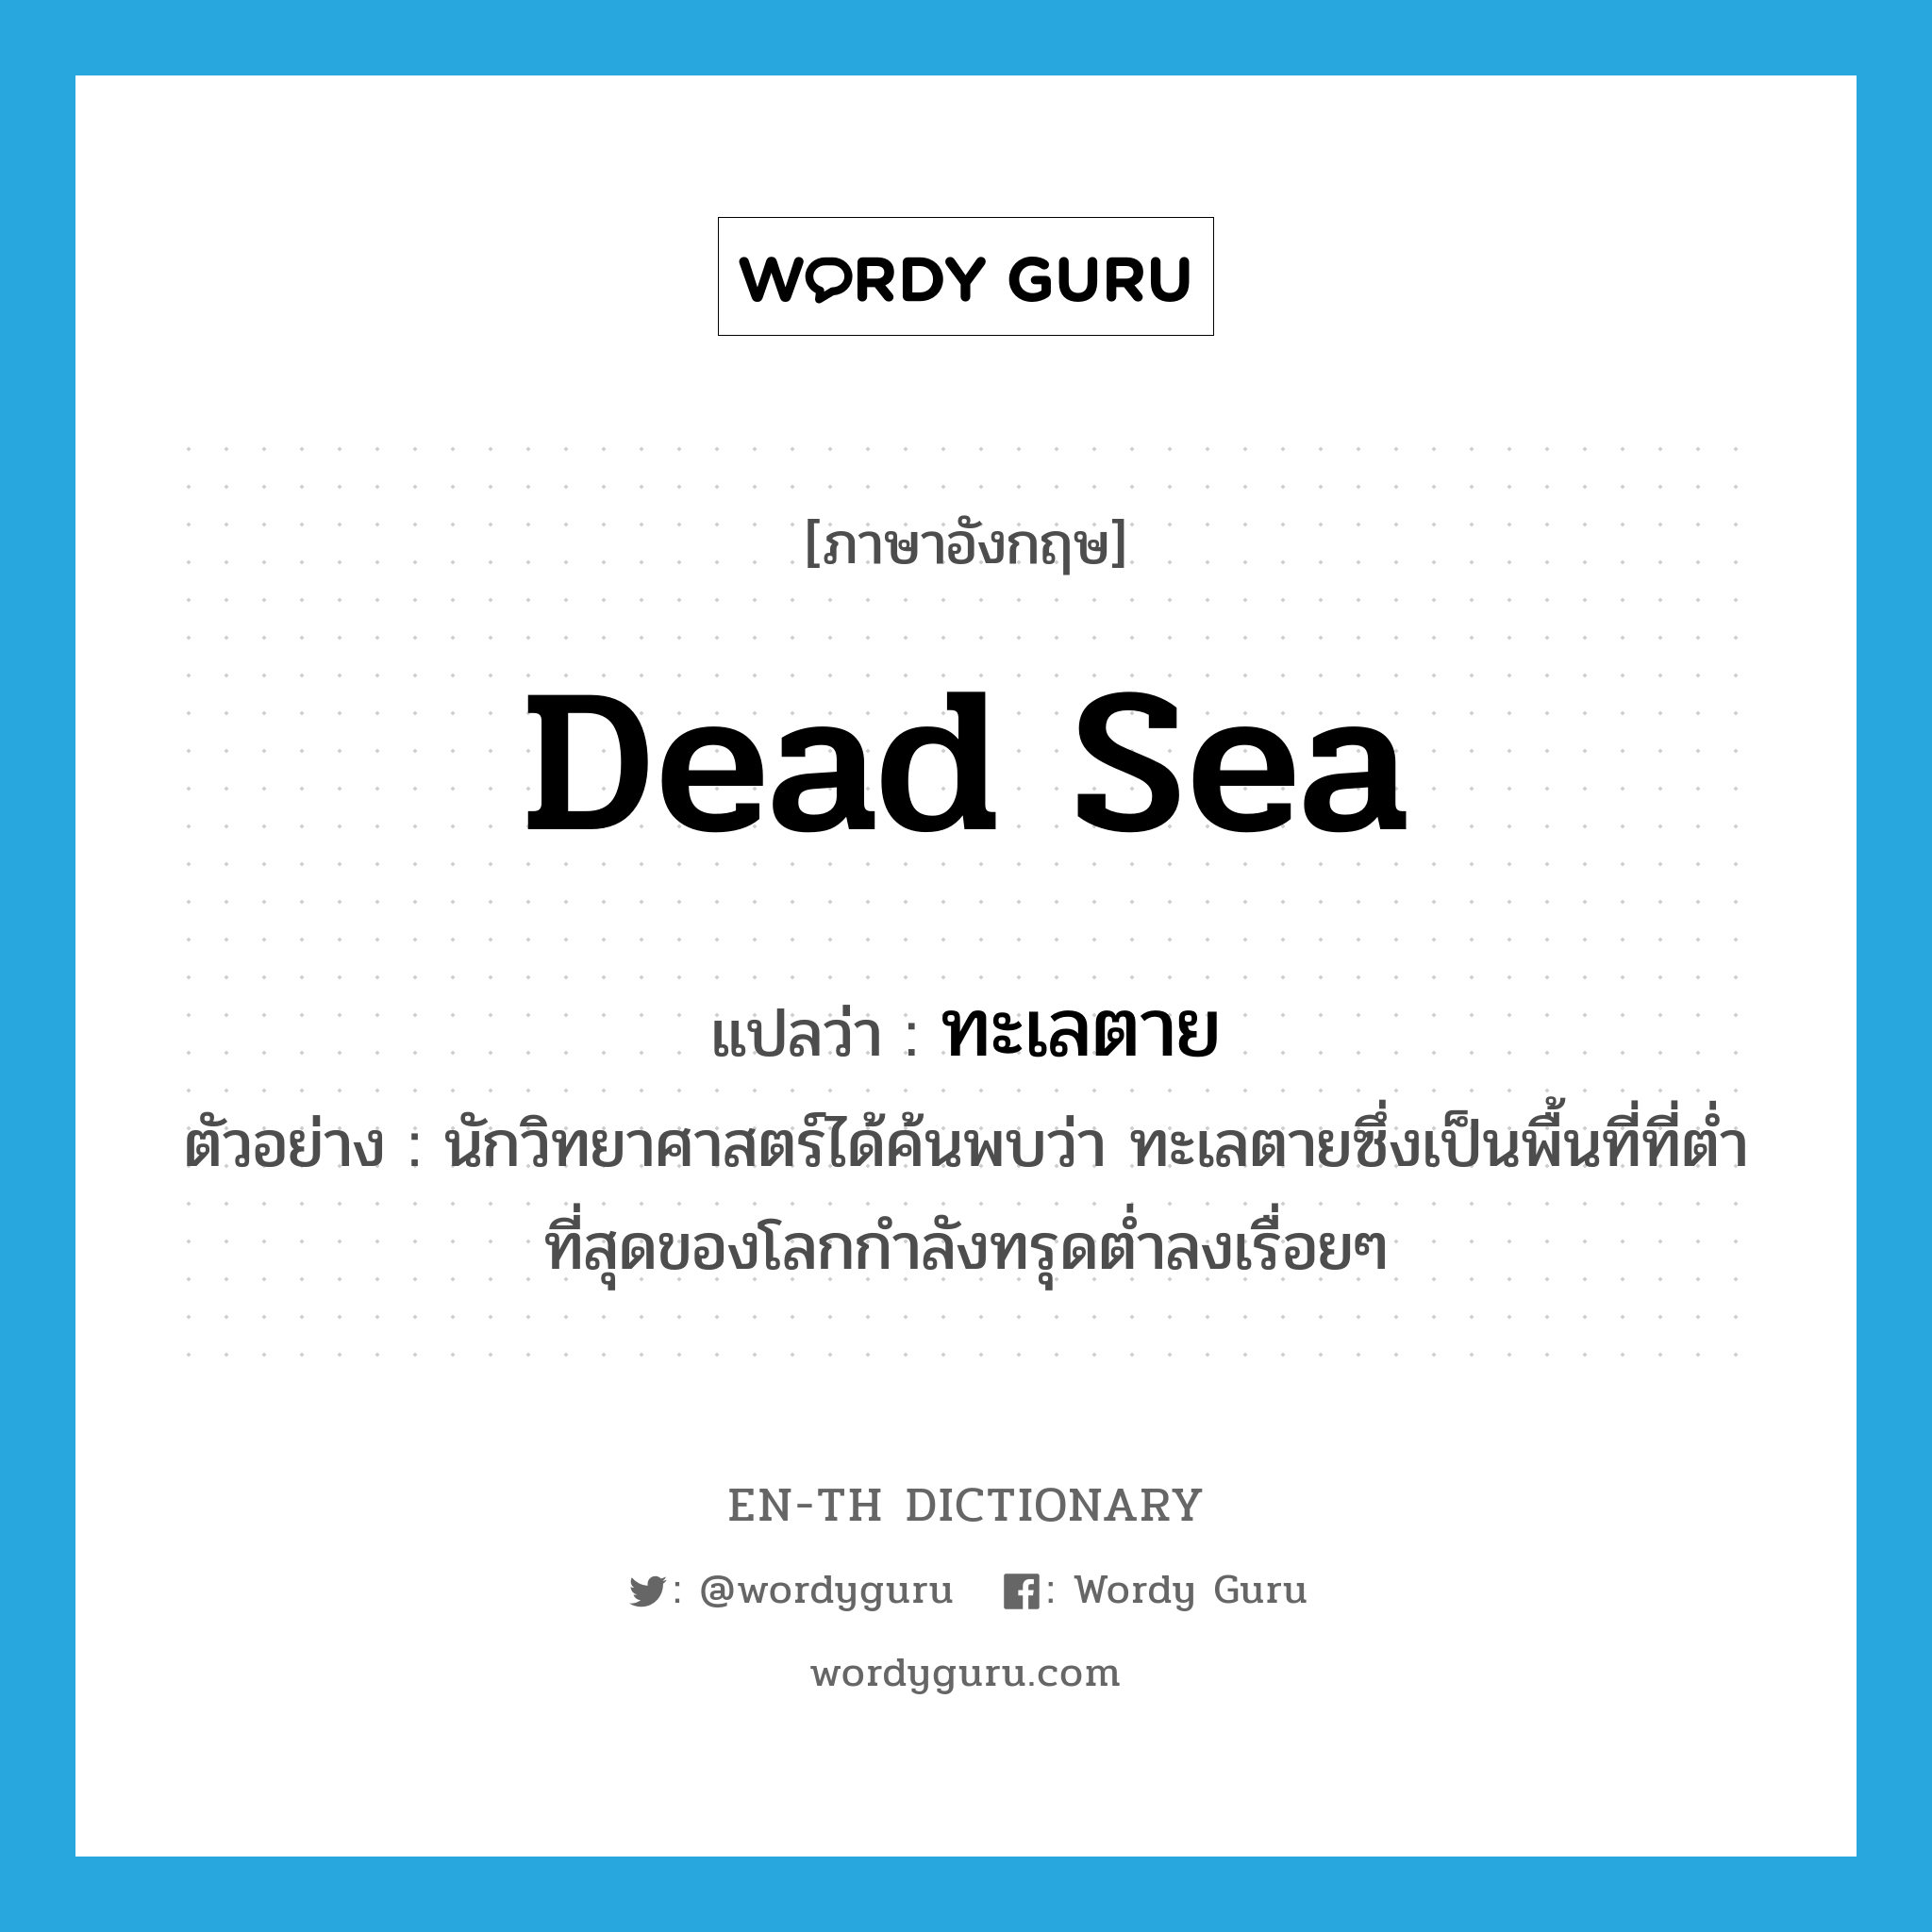 Dead Sea แปลว่า?, คำศัพท์ภาษาอังกฤษ Dead Sea แปลว่า ทะเลตาย ประเภท N ตัวอย่าง นักวิทยาศาสตร์ได้ค้นพบว่า ทะเลตายซึ่งเป็นพื้นที่ที่ต่ำที่สุดของโลกกำลังทรุดต่ำลงเรื่อยๆ หมวด N